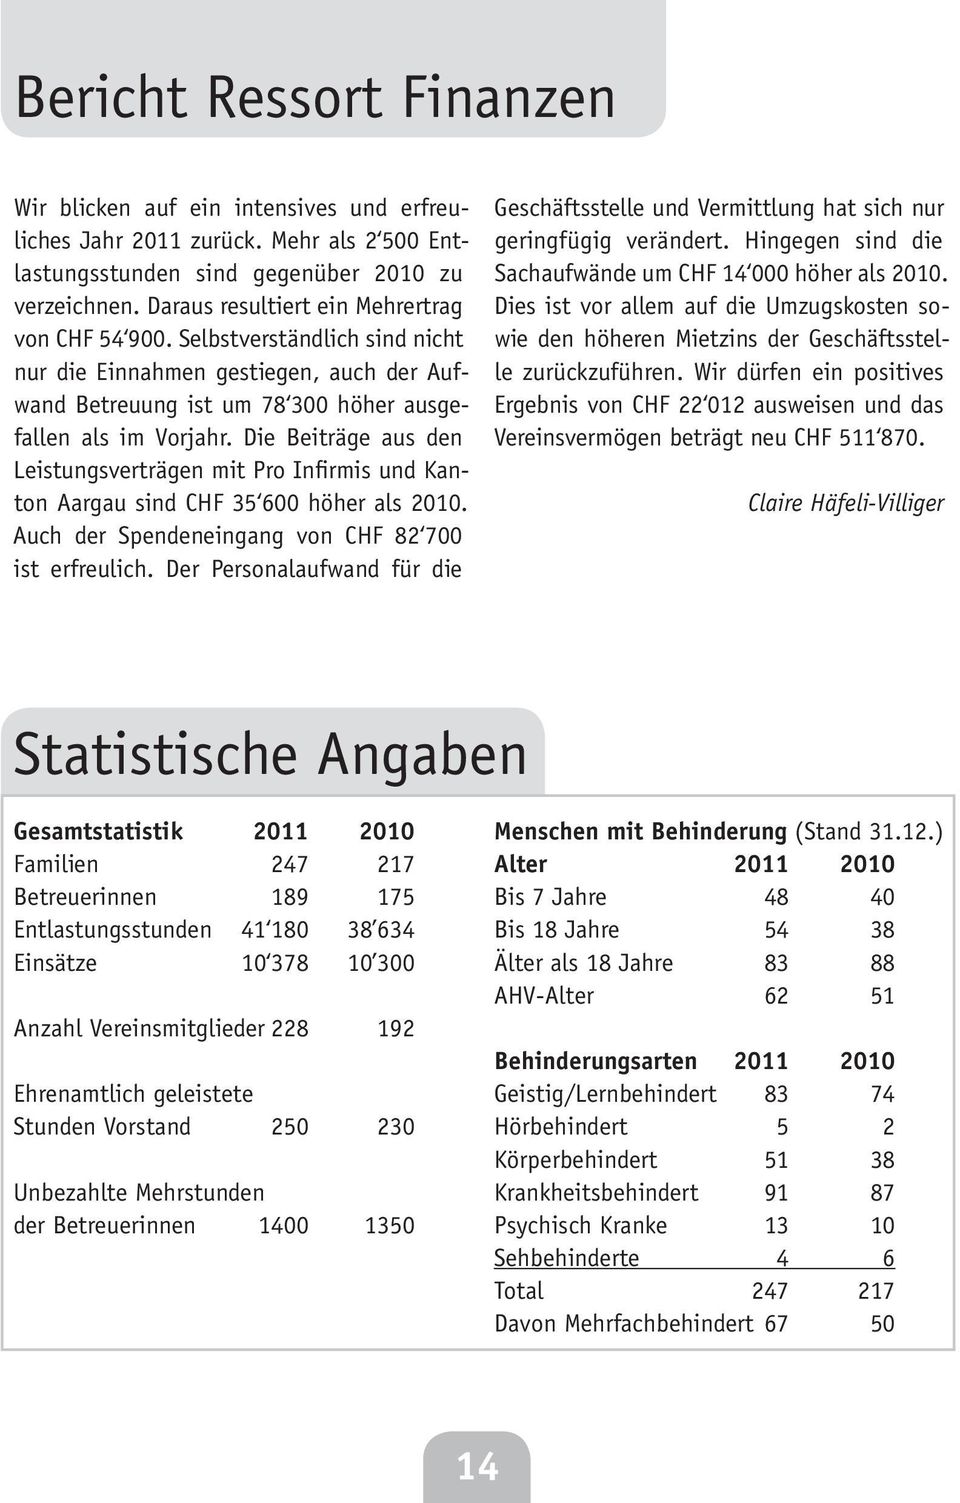 Die Beiträge aus den Leistungsverträgen mit Pro Infirmis und Kanton Aargau sind CHF 35 600 höher als 2010. Auch der Spendeneingang von CHF 82 700 ist erfreulich.